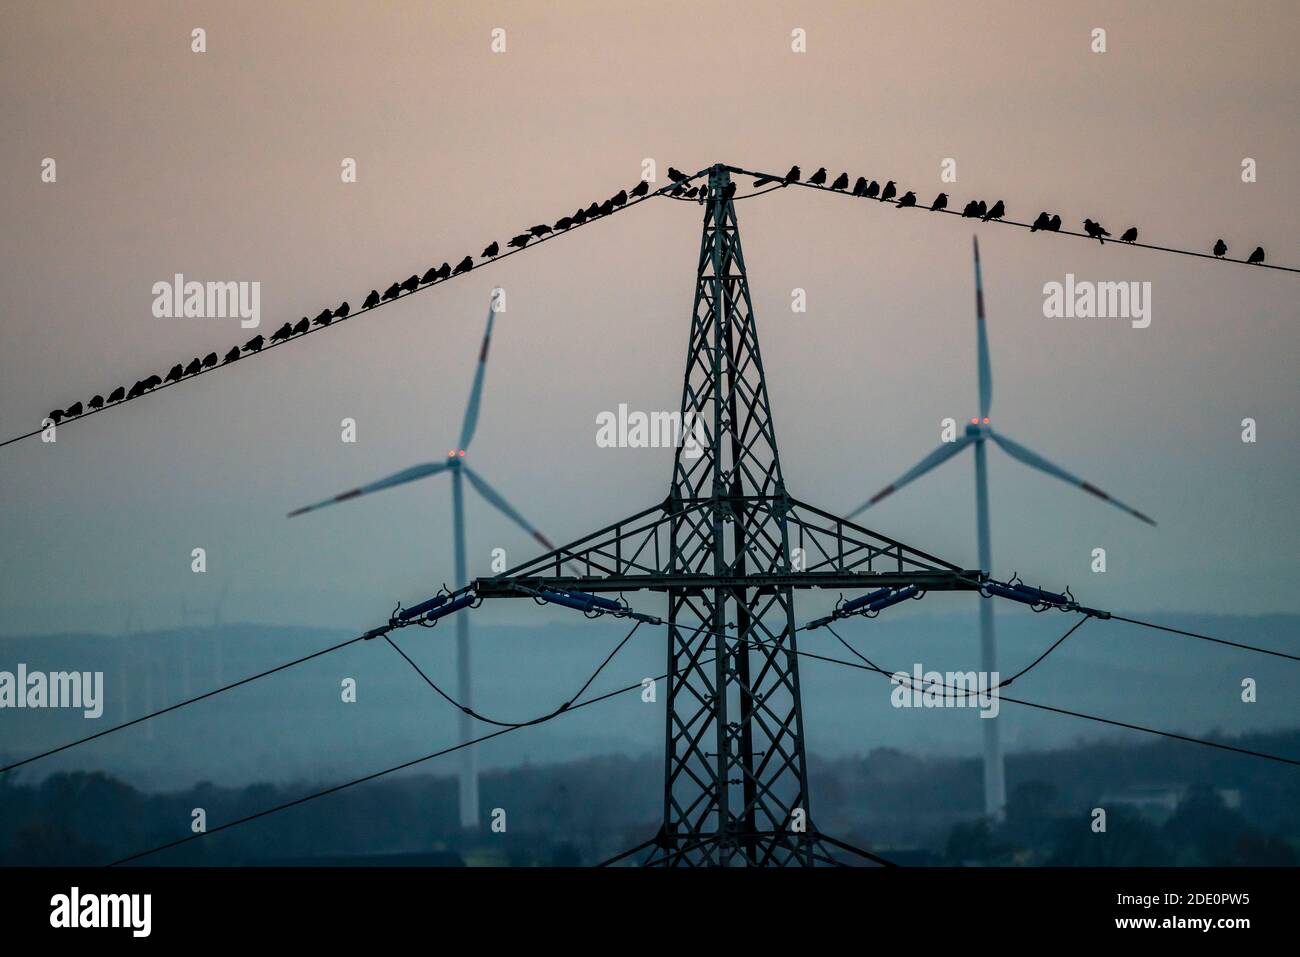 Viele Vögel, Saatkrähen, sitzen nach Sonnenuntergang auf einer Stromleitung, Windkraftanlagen, Hamm, NRW, Deutschland Stockfoto